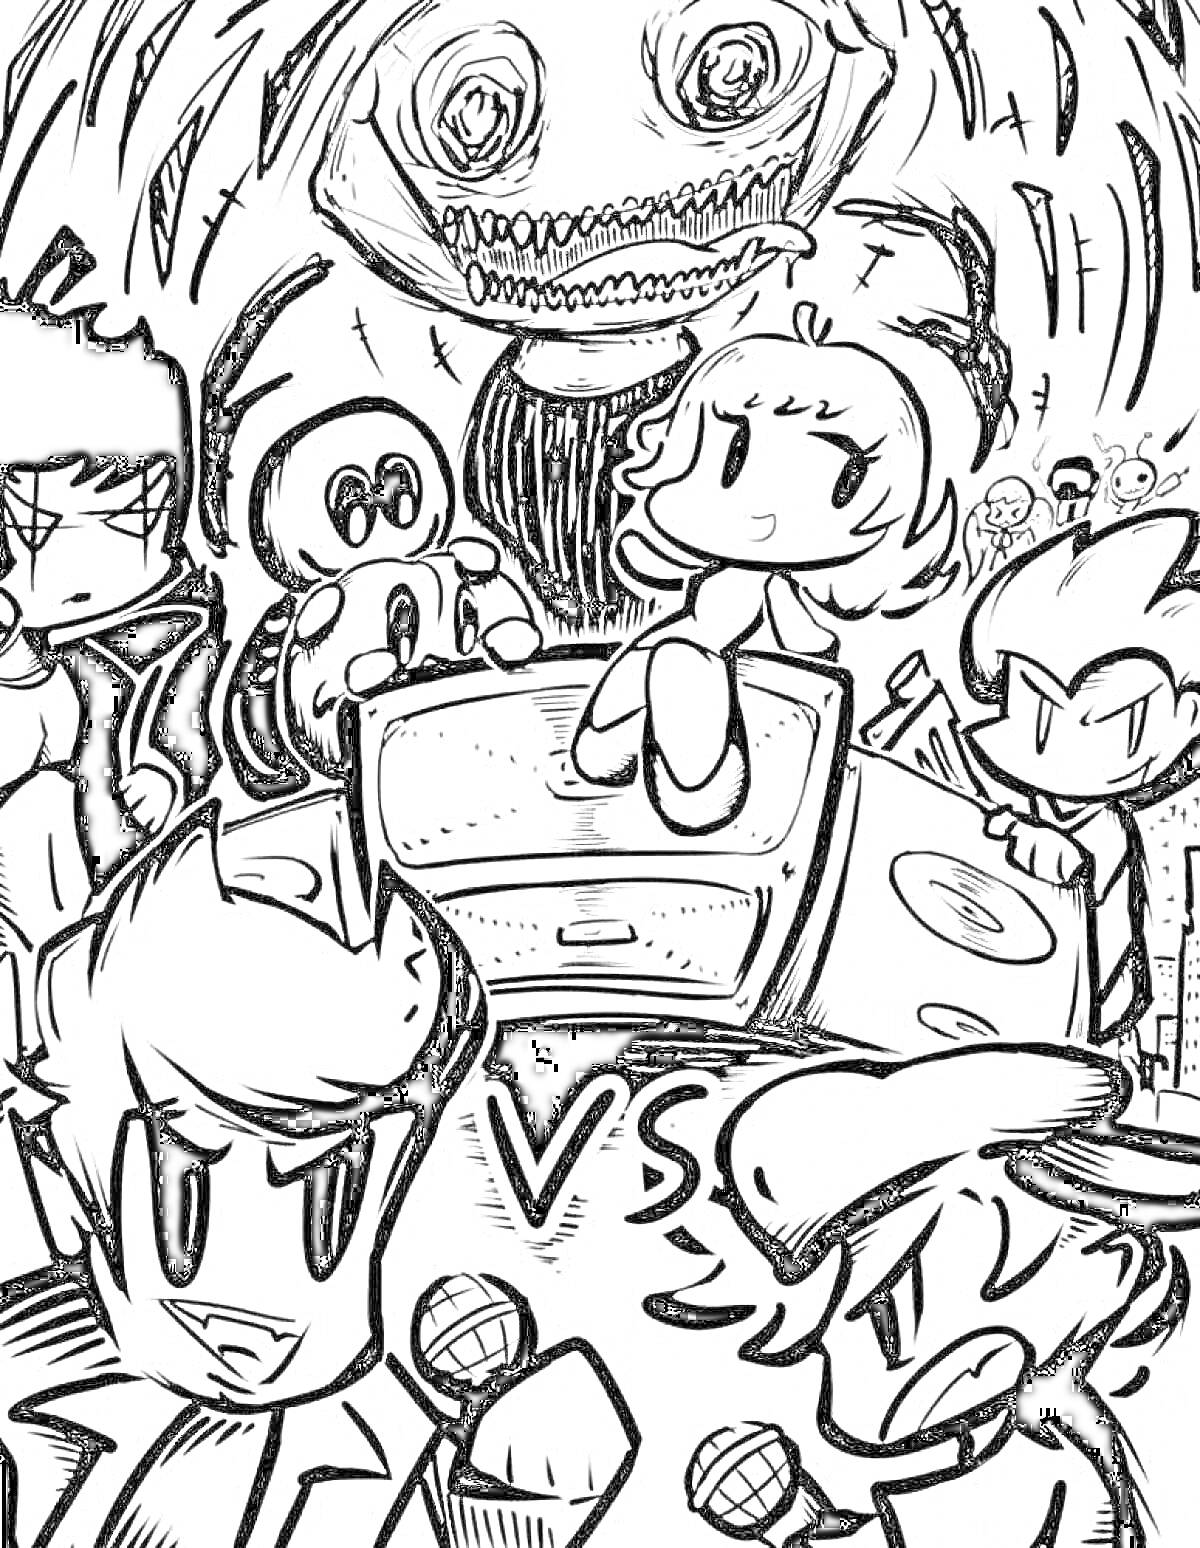 Черно-белая раскраска с персонажами и микрофонами из Фредди Найт Фанкин, девочкой на колонке, загадочным большим существом и символом VS